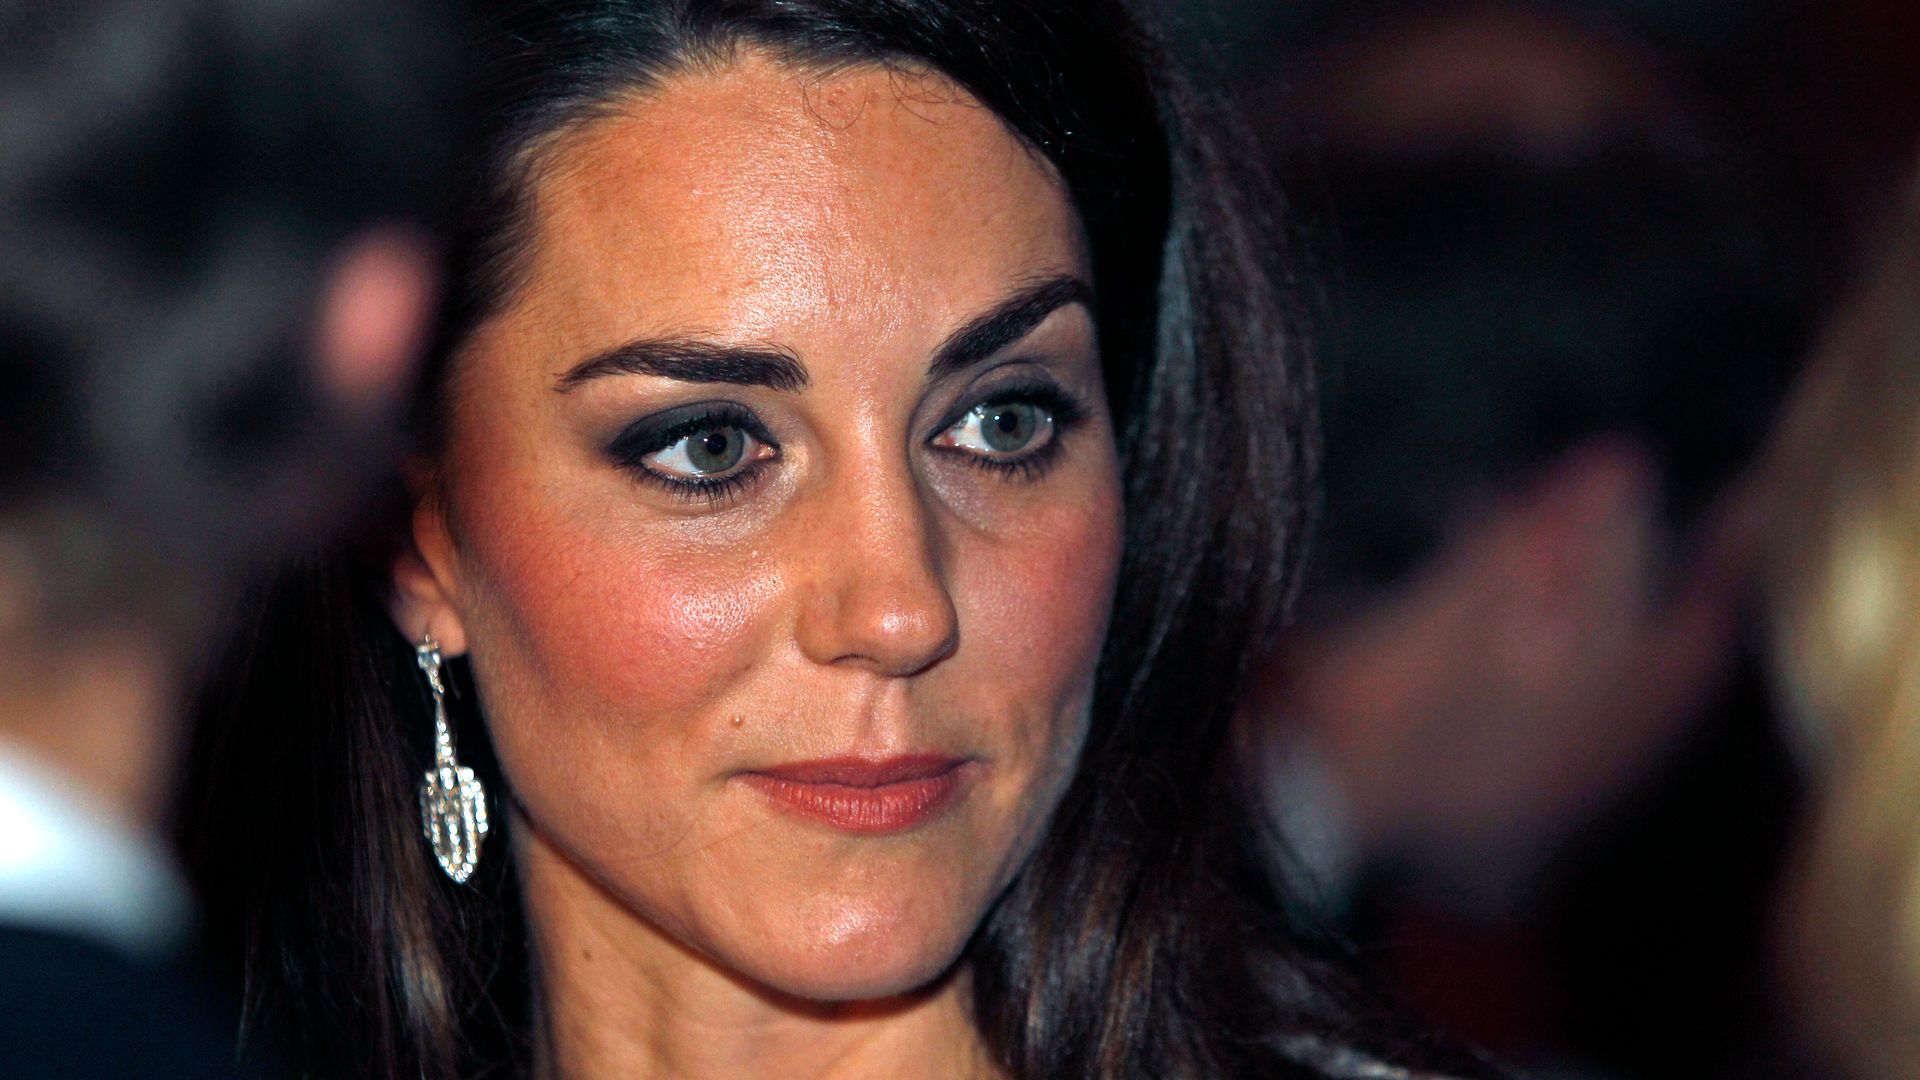 Kate Middleton wears heavy eyeliner